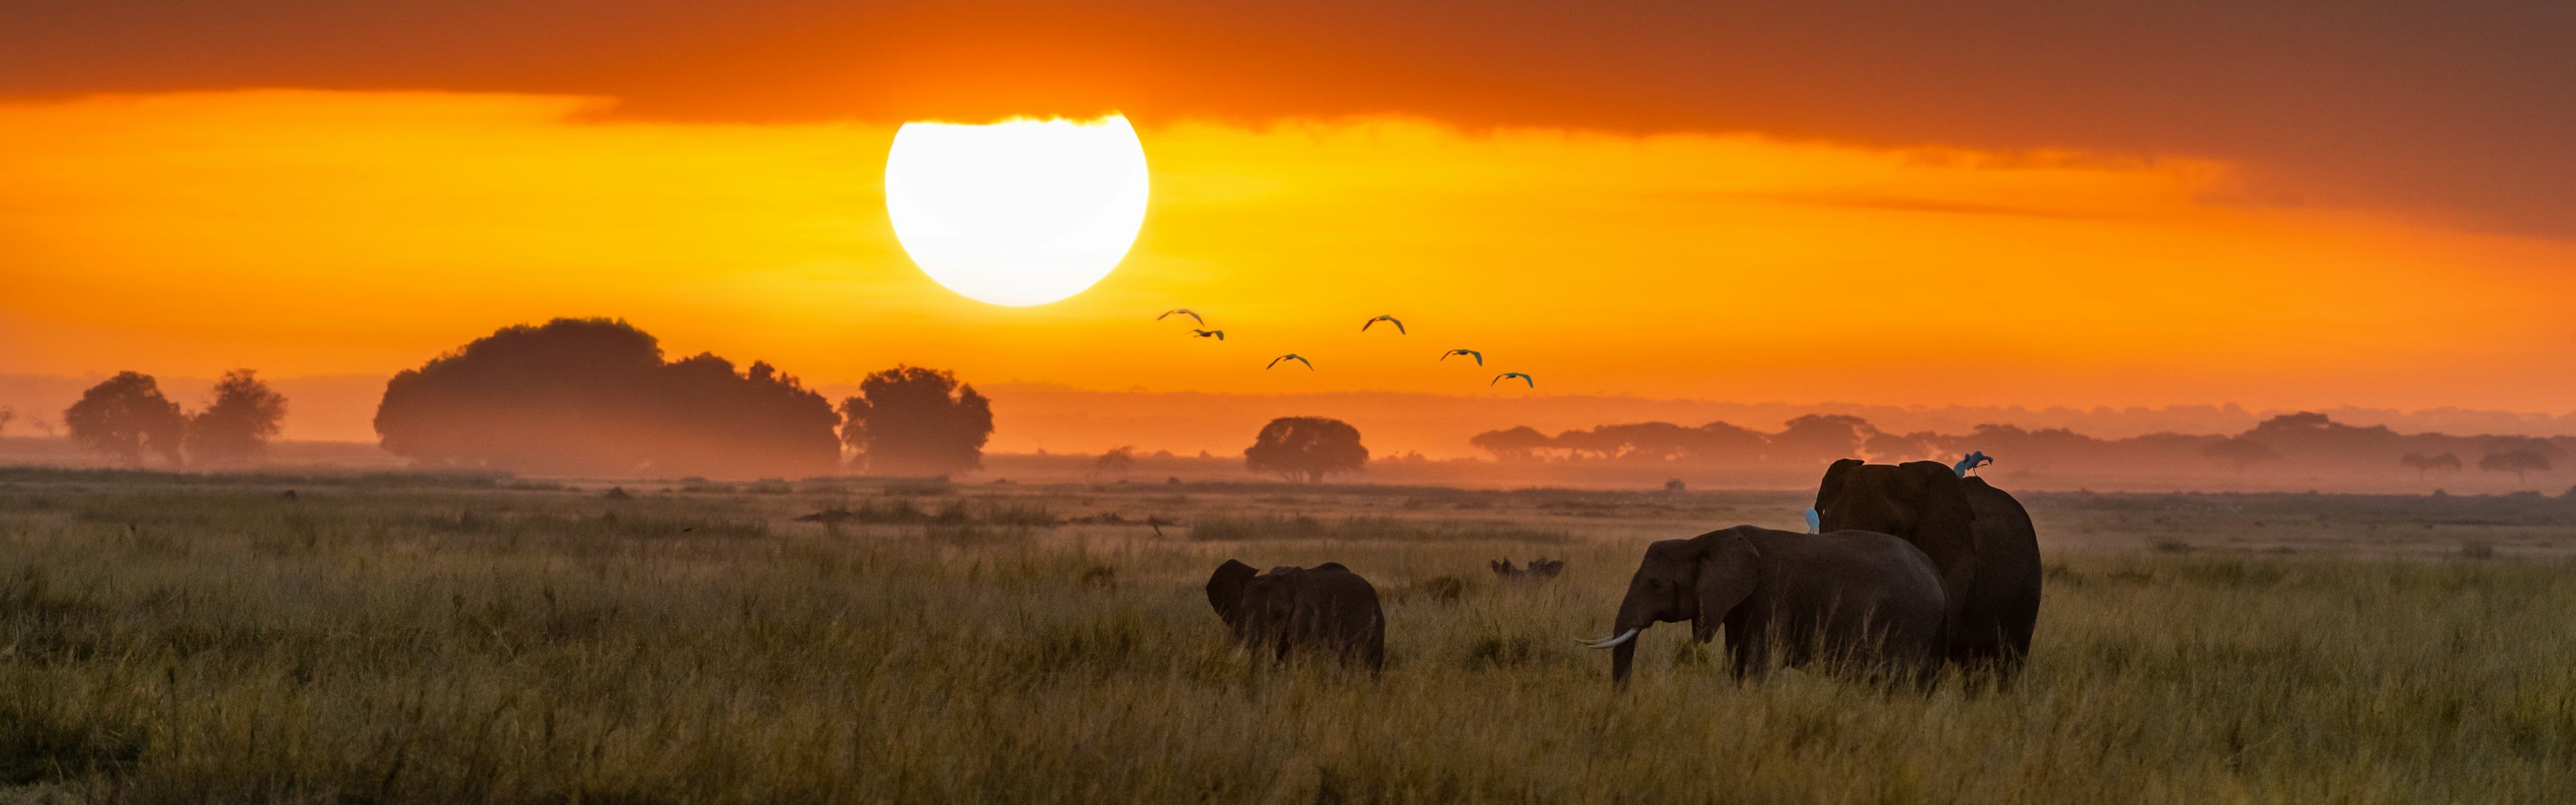 Elephants walking at sunset